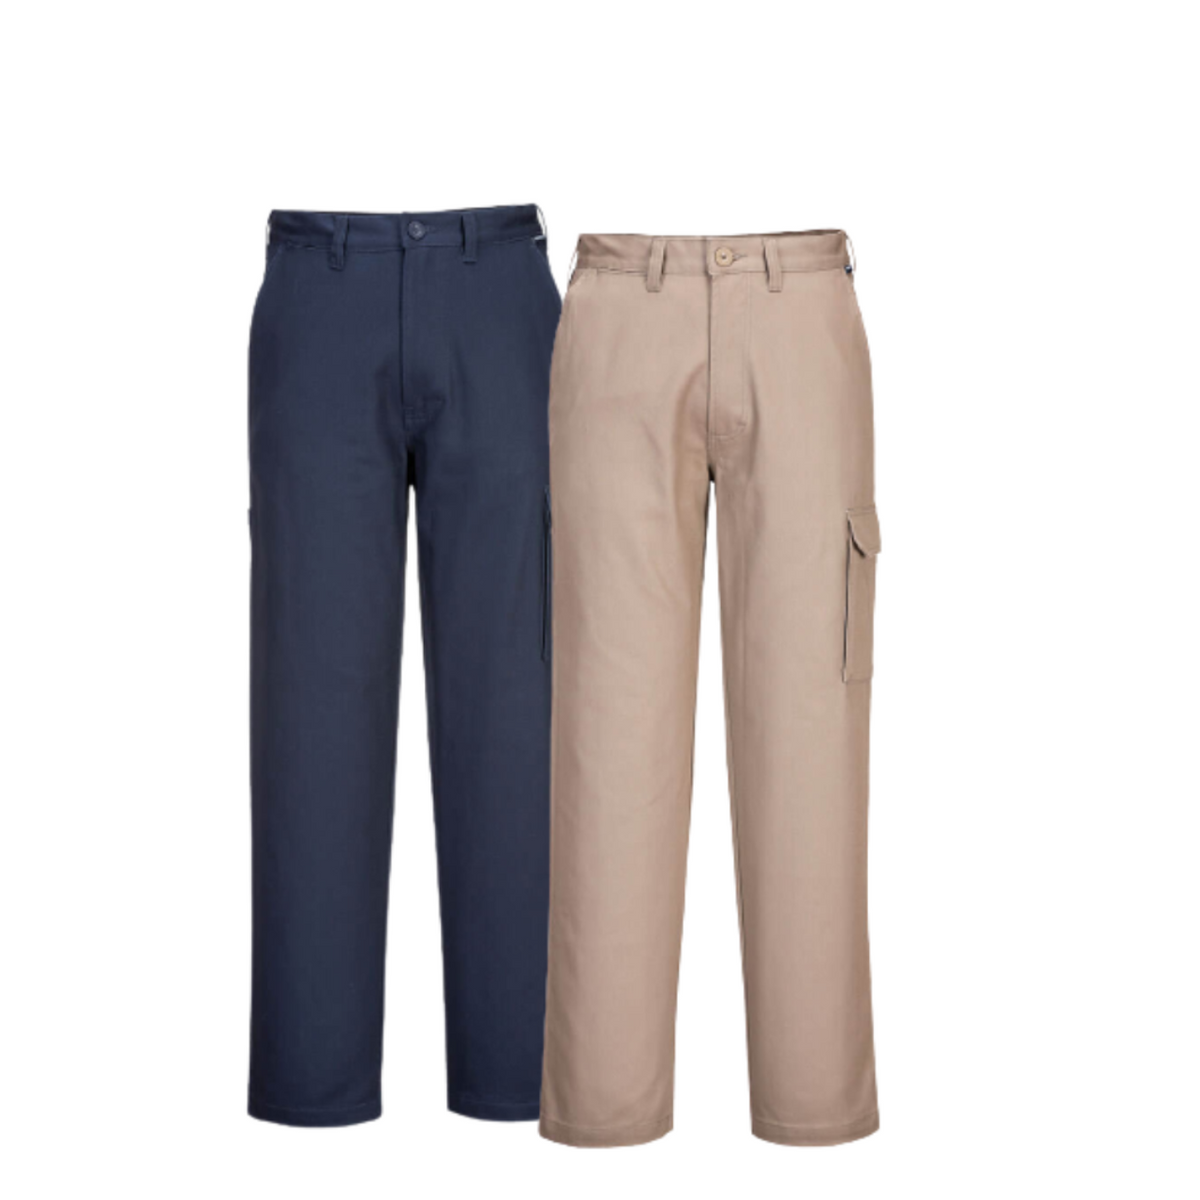 Portwest Cargo Pants Pre Shrunk Cotton Button Belt Adjustable Pant MP700-Collins Clothing Co